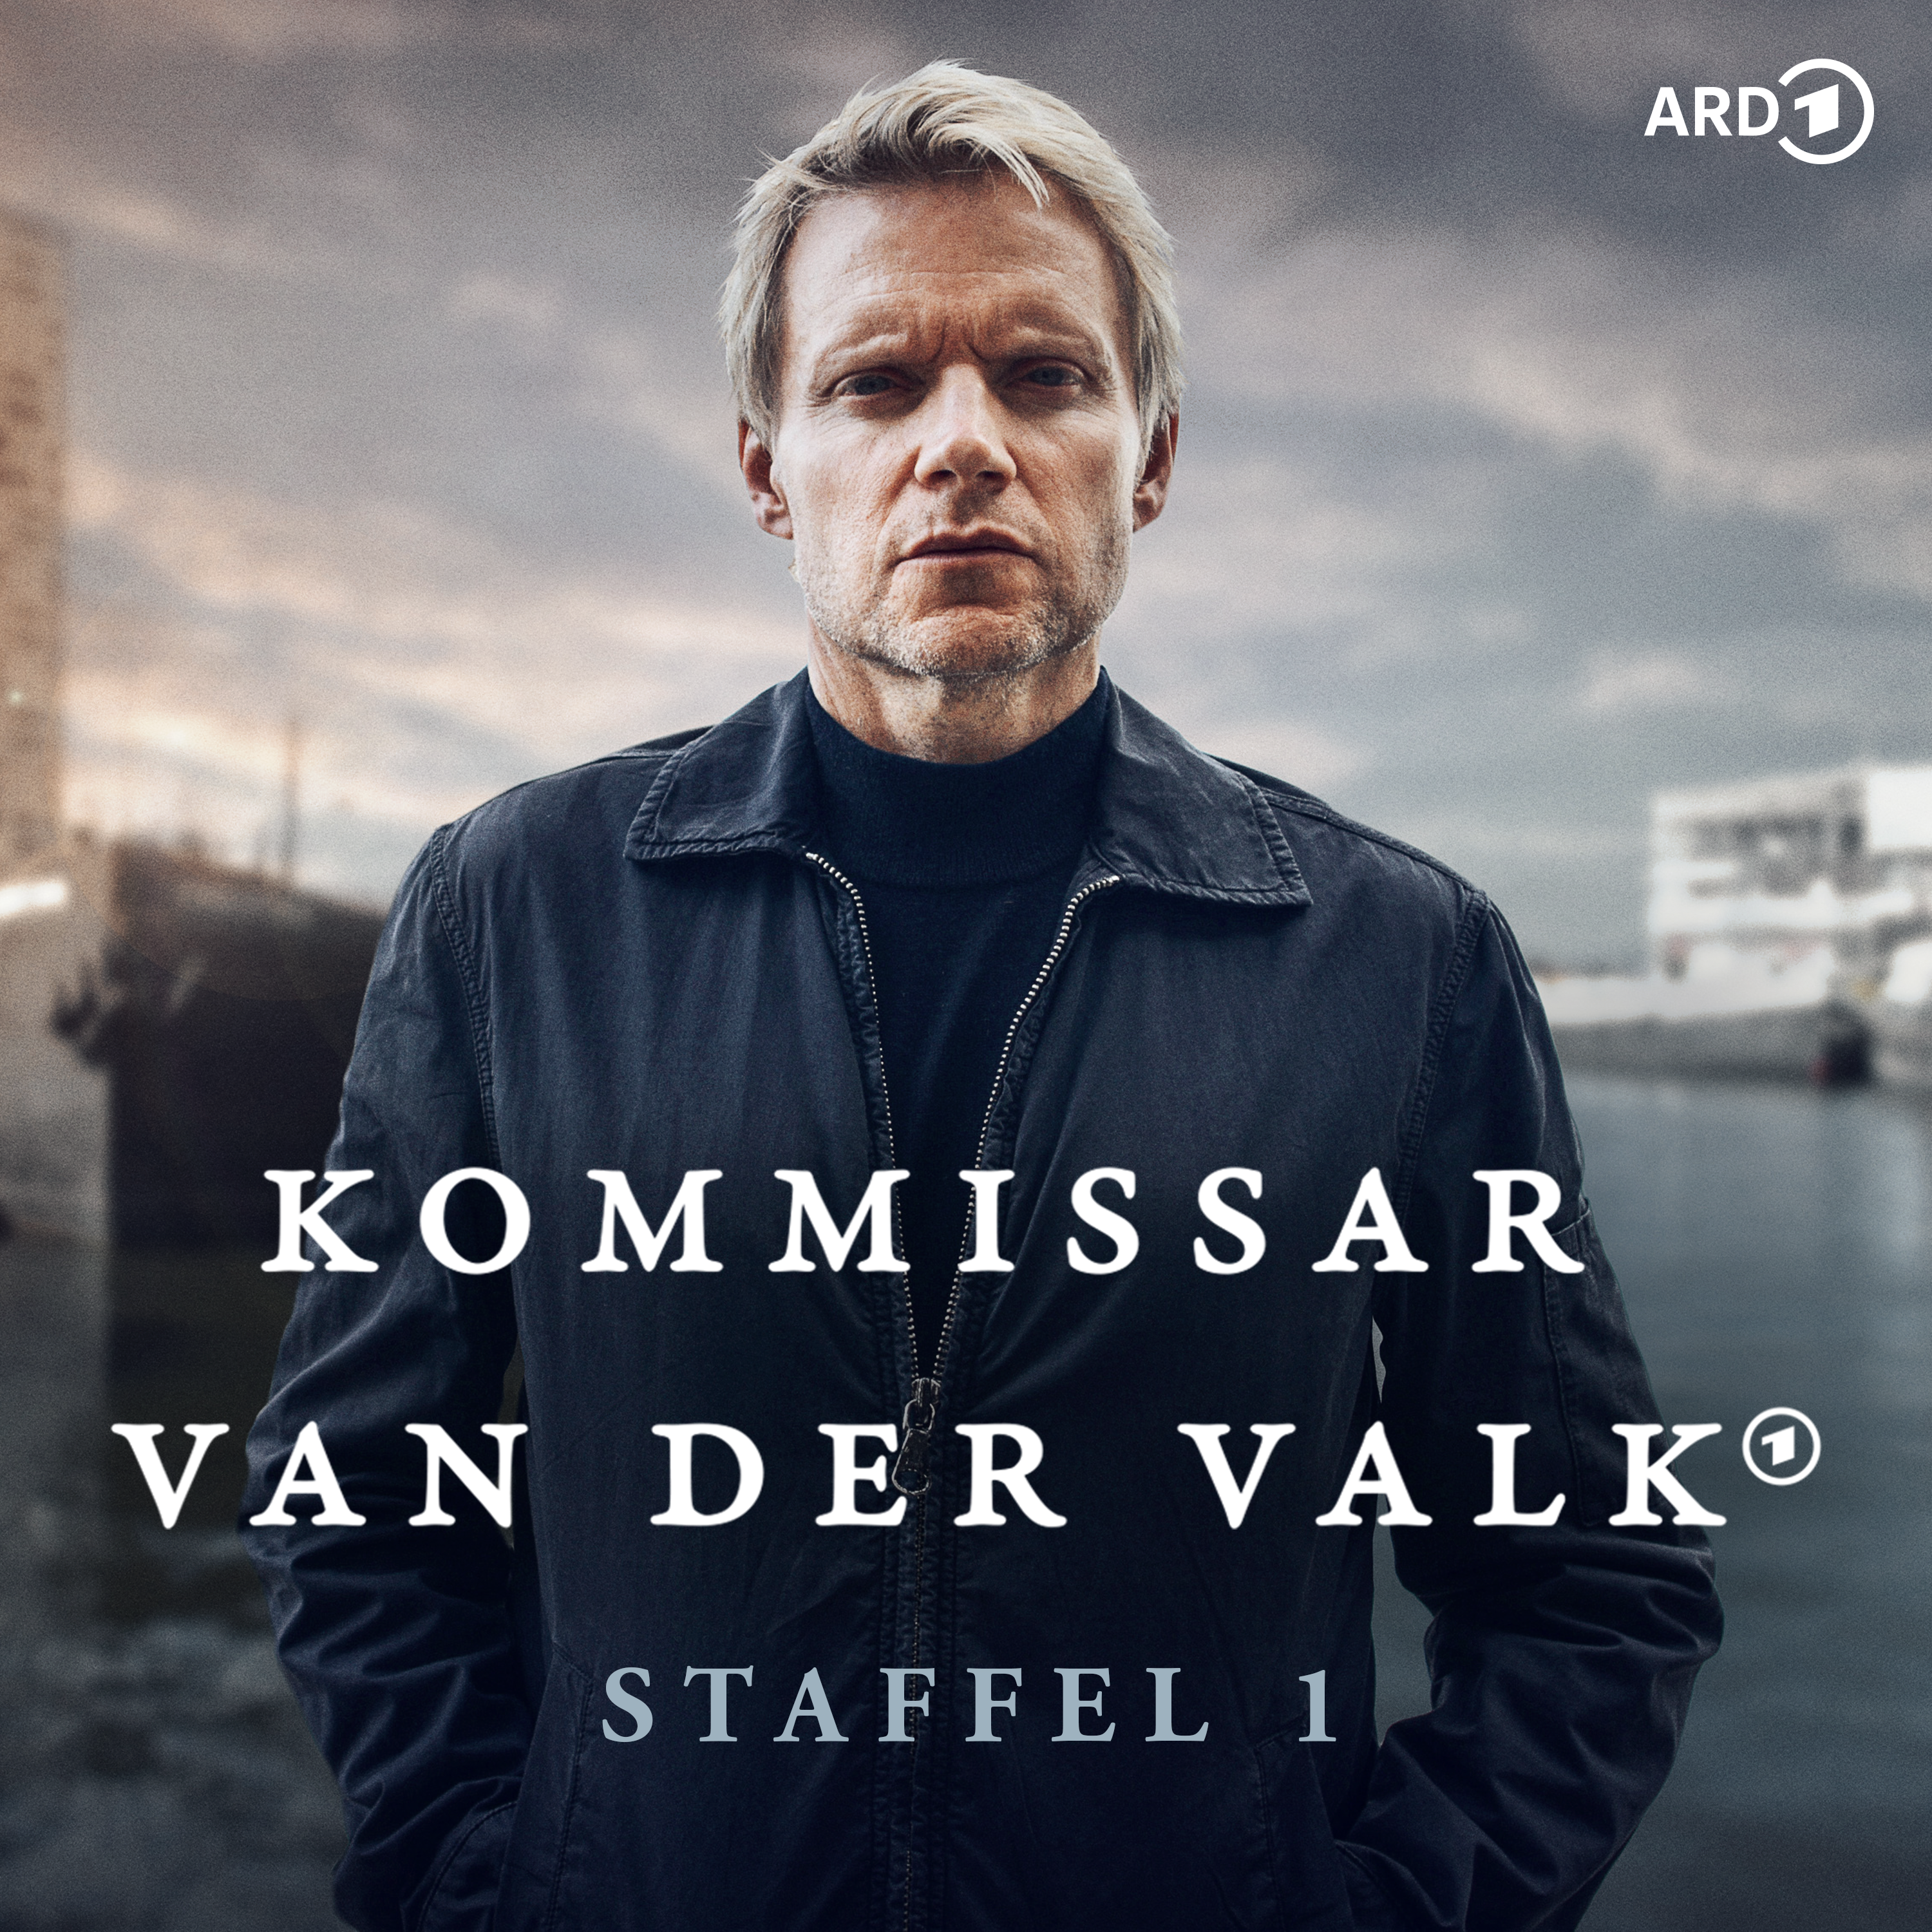 Kommissar Van der Valk (Staffel 1)